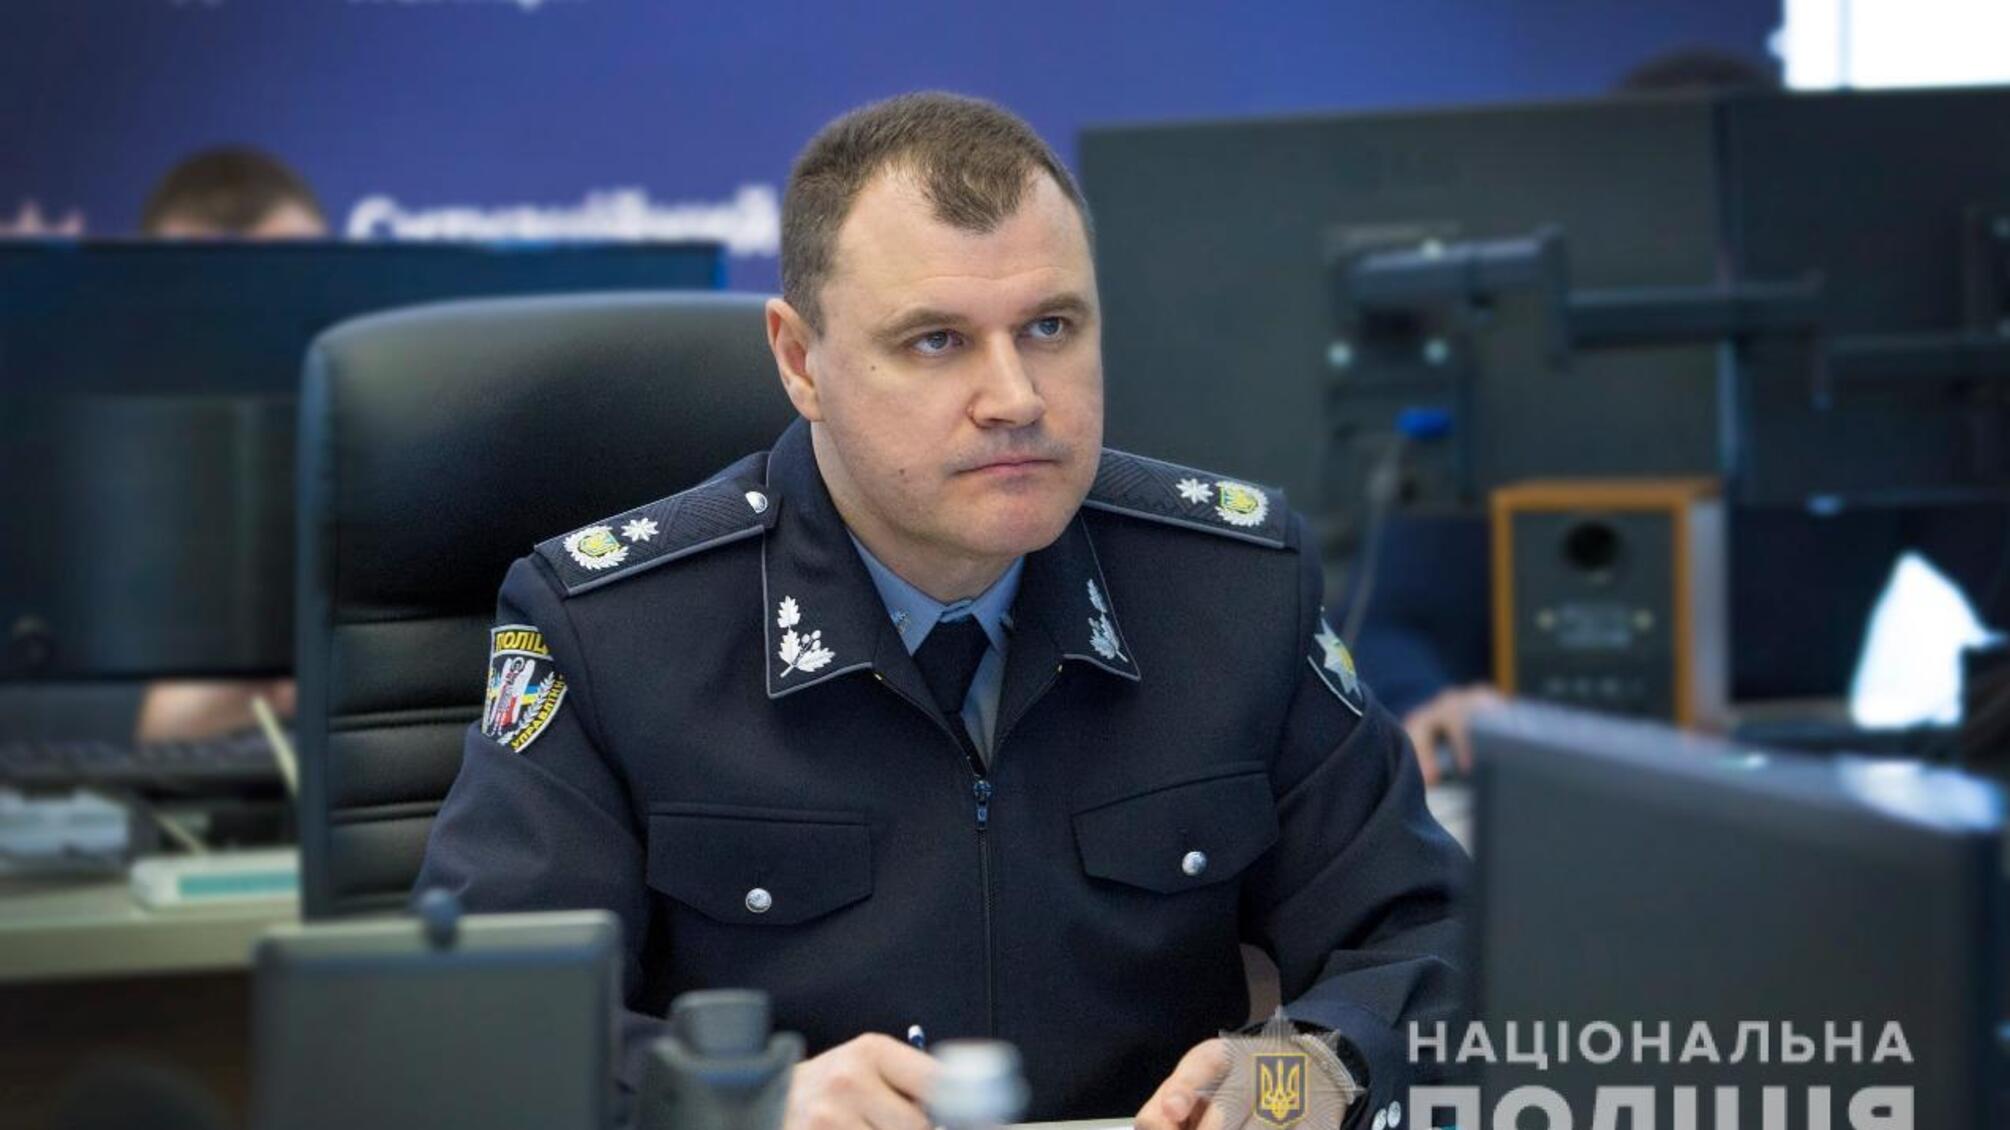 Ігор Клименко: Управління органами та підрозділами поліції здійснюється професійно та безперебійно